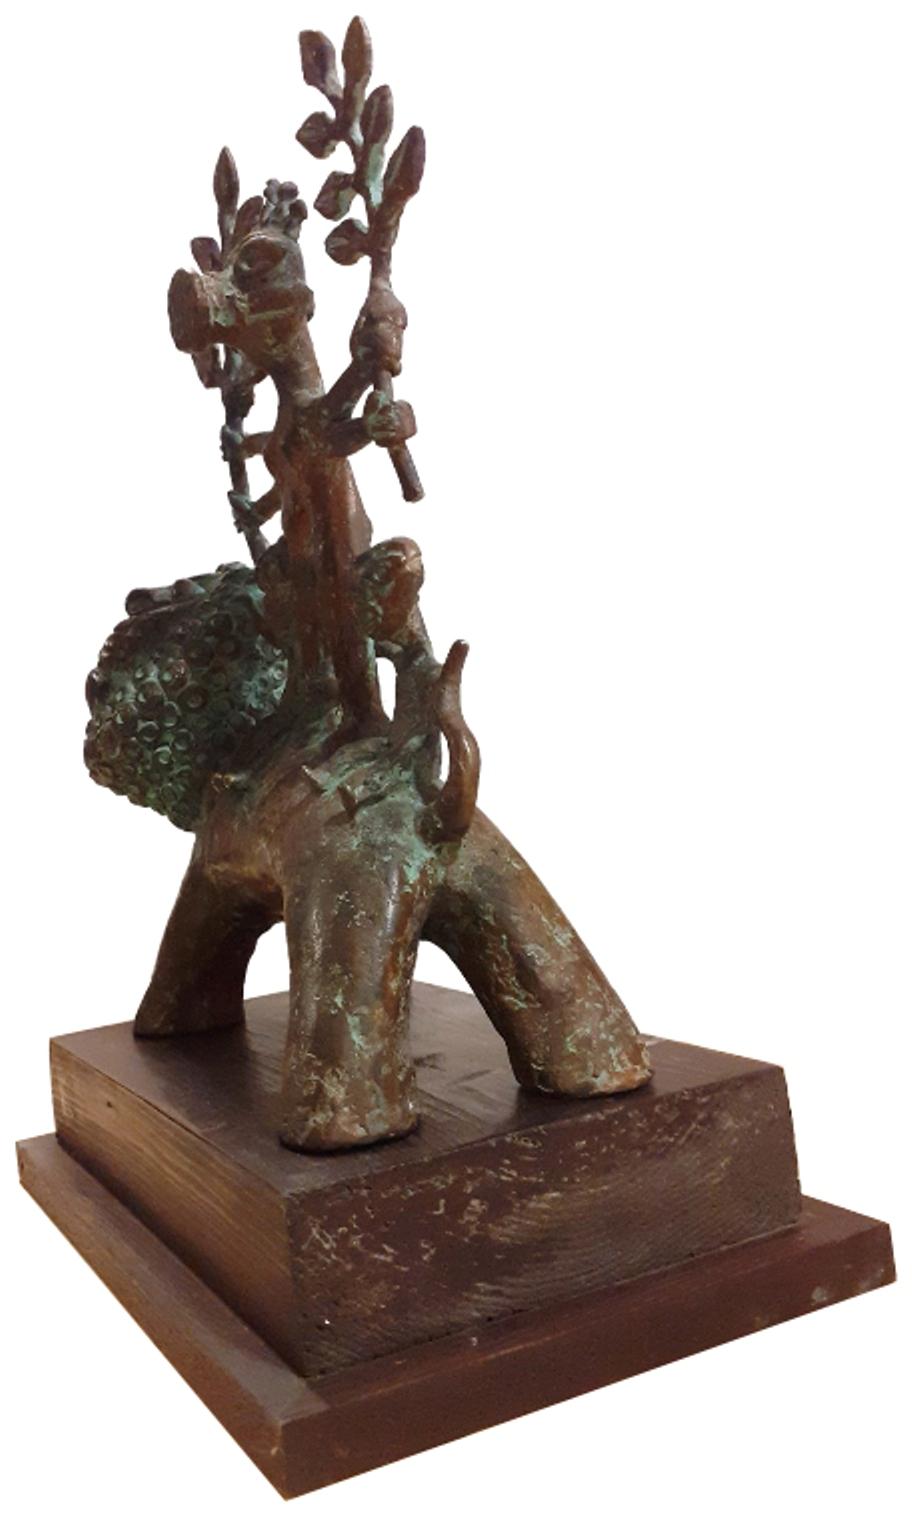 Subrata Biswas - Mère Nature
Bronze, H 11.75 x L 9 x P 3.75 pouces

Style : Le motif de l'enfant dans sa forme la plus élémentaire apparaît assez souvent dans les œuvres de Subrata Biswas. La forme humaine élémentaire représentant l'enfant complète